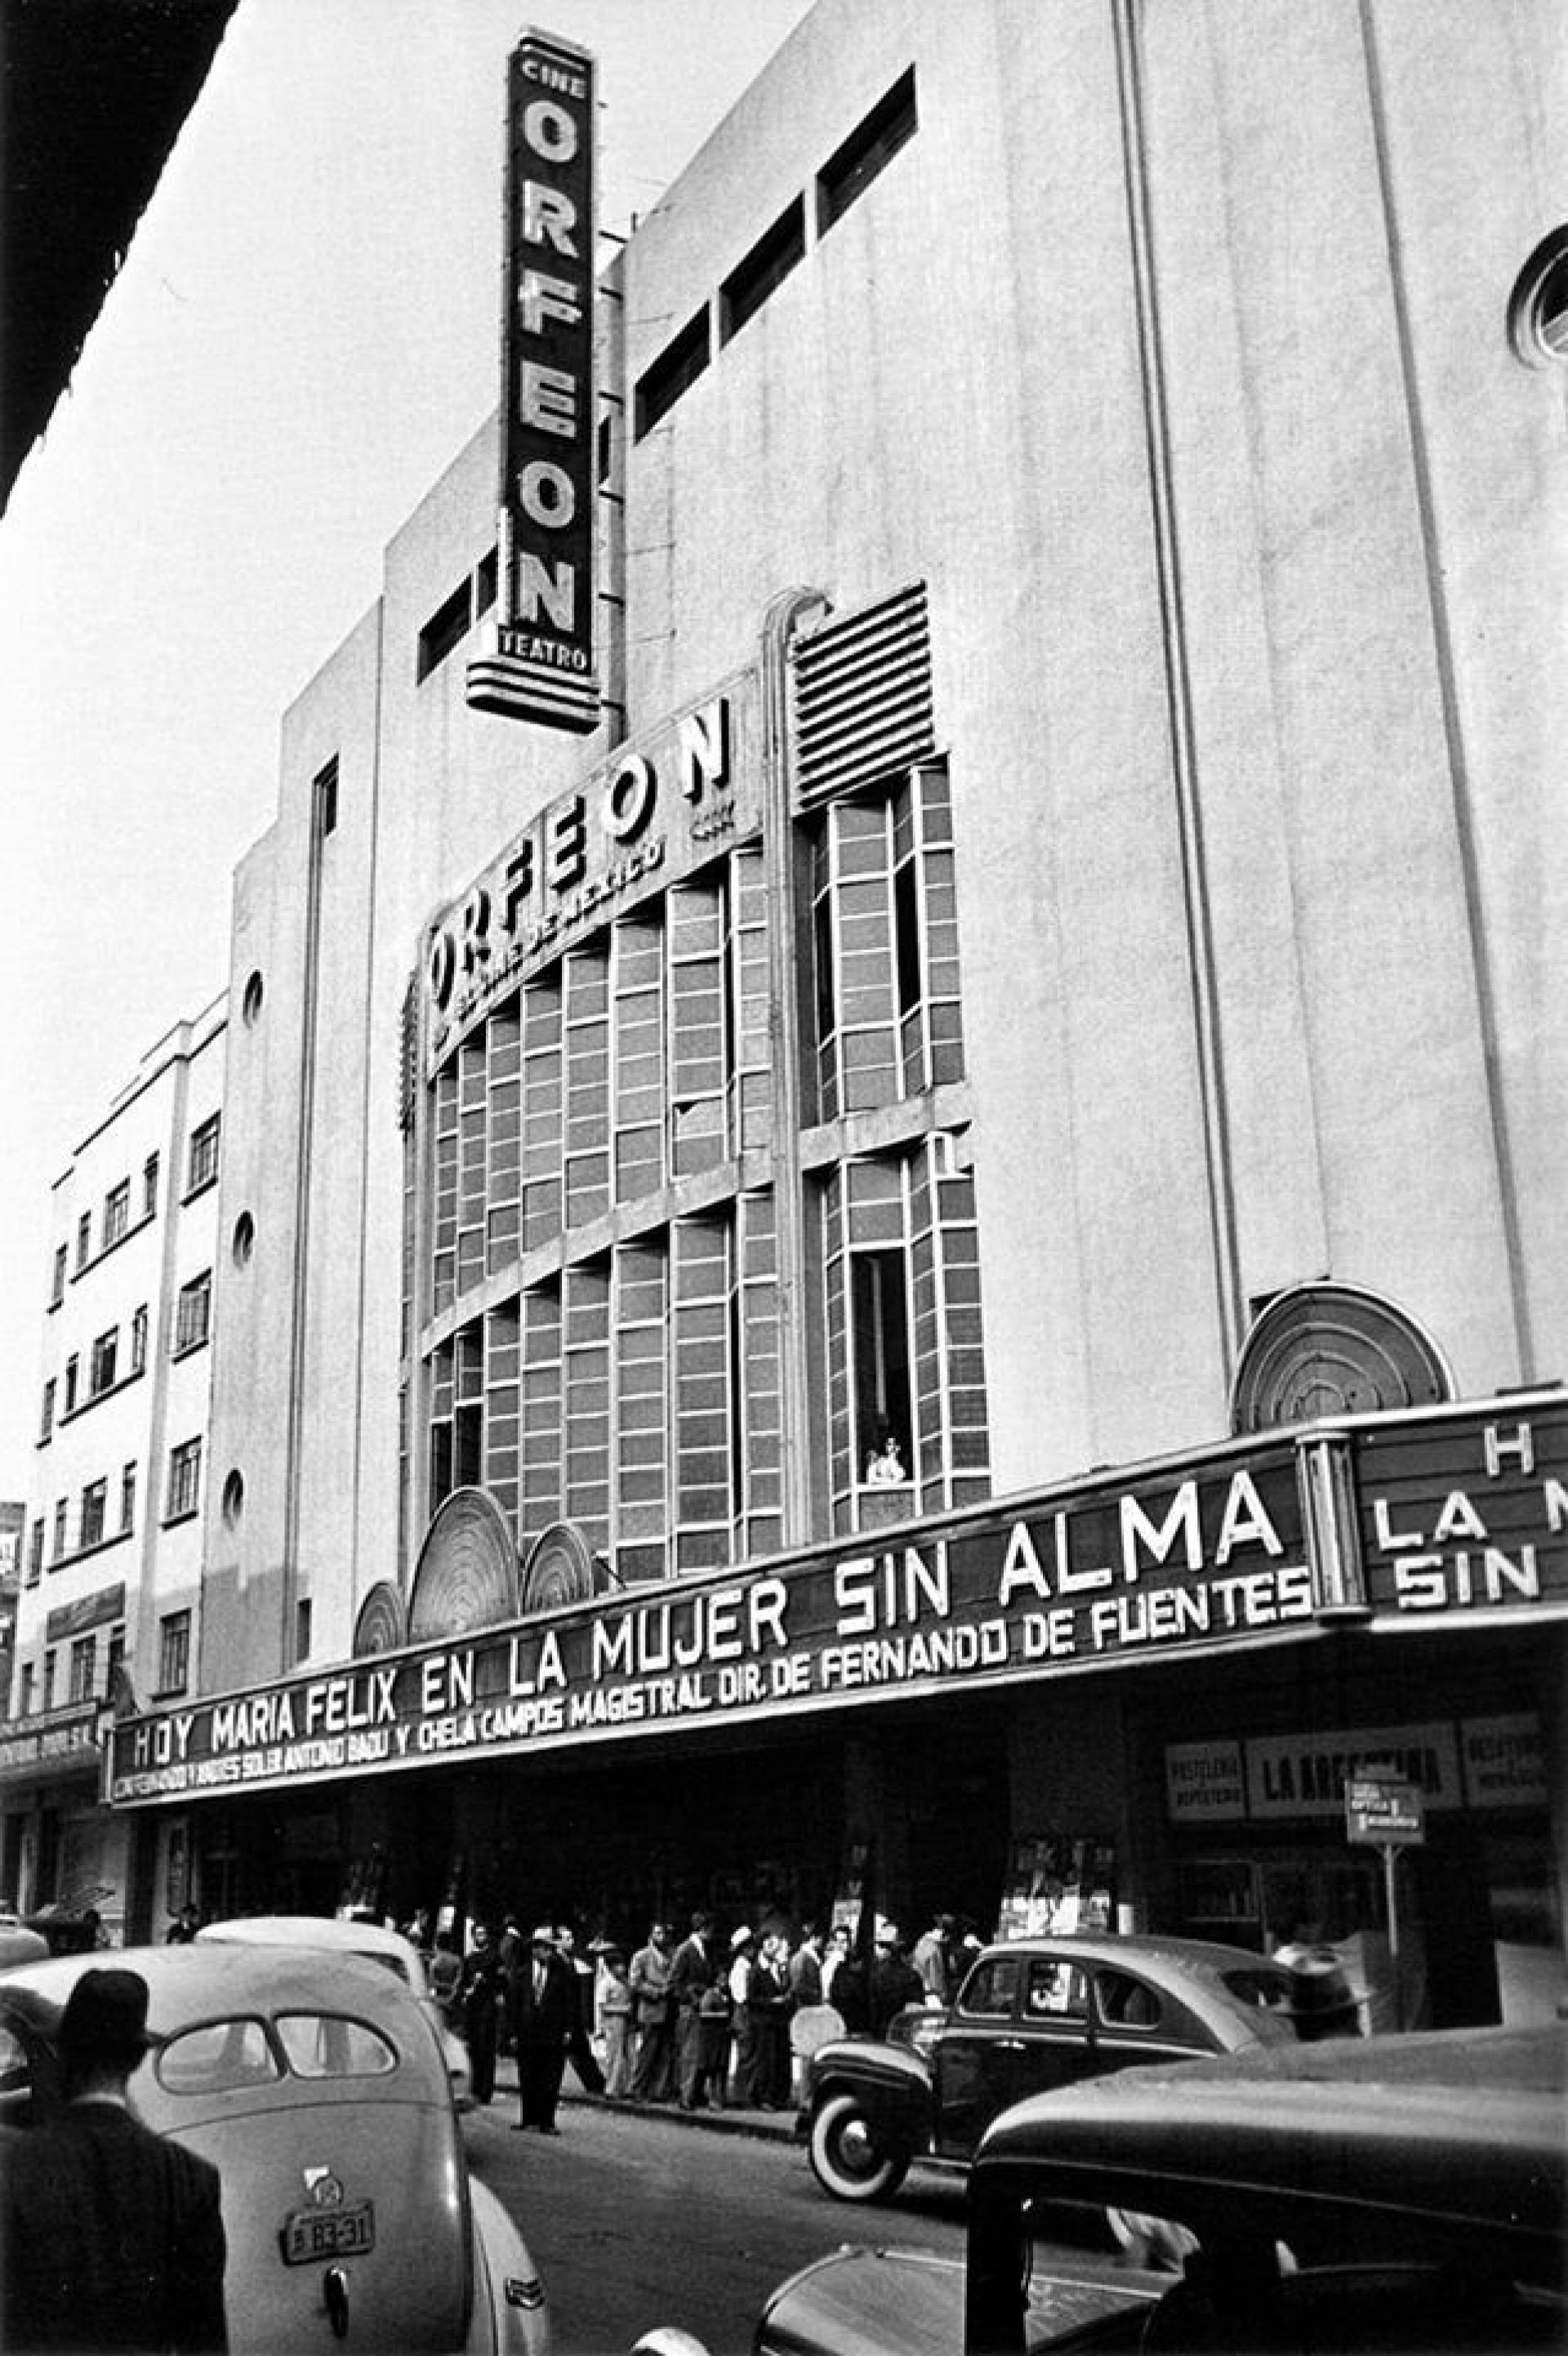 Cine Orfeón (1938). | Photo by Juan Guzmán, FotográficaMX